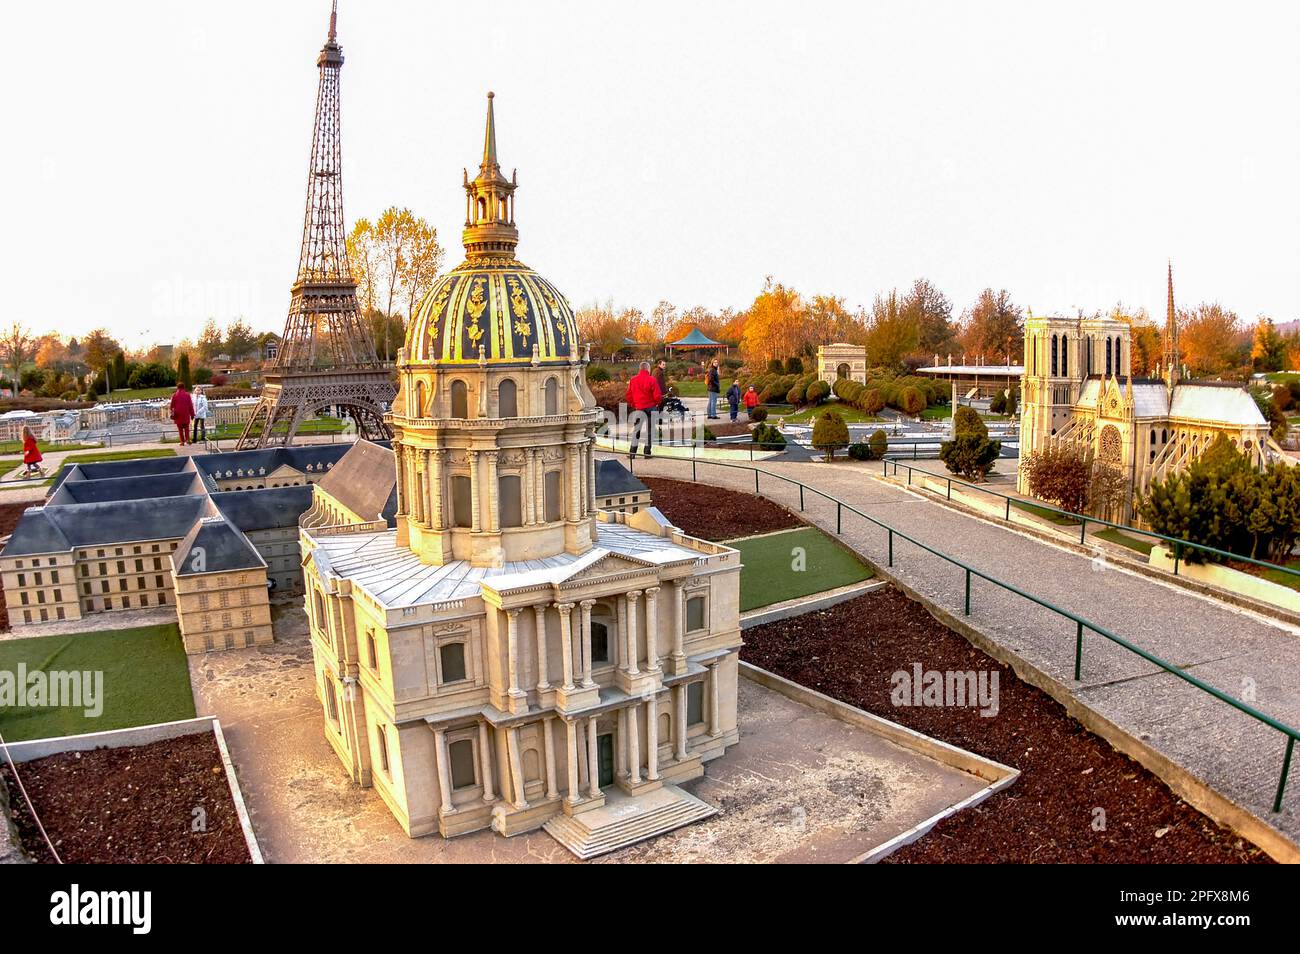 Paris, France - touristes visitant, Parc à thème, en banlieue, France miniature, avec maquettes architecturales des monuments français. Invalides et Tour Eiffel. Banque D'Images